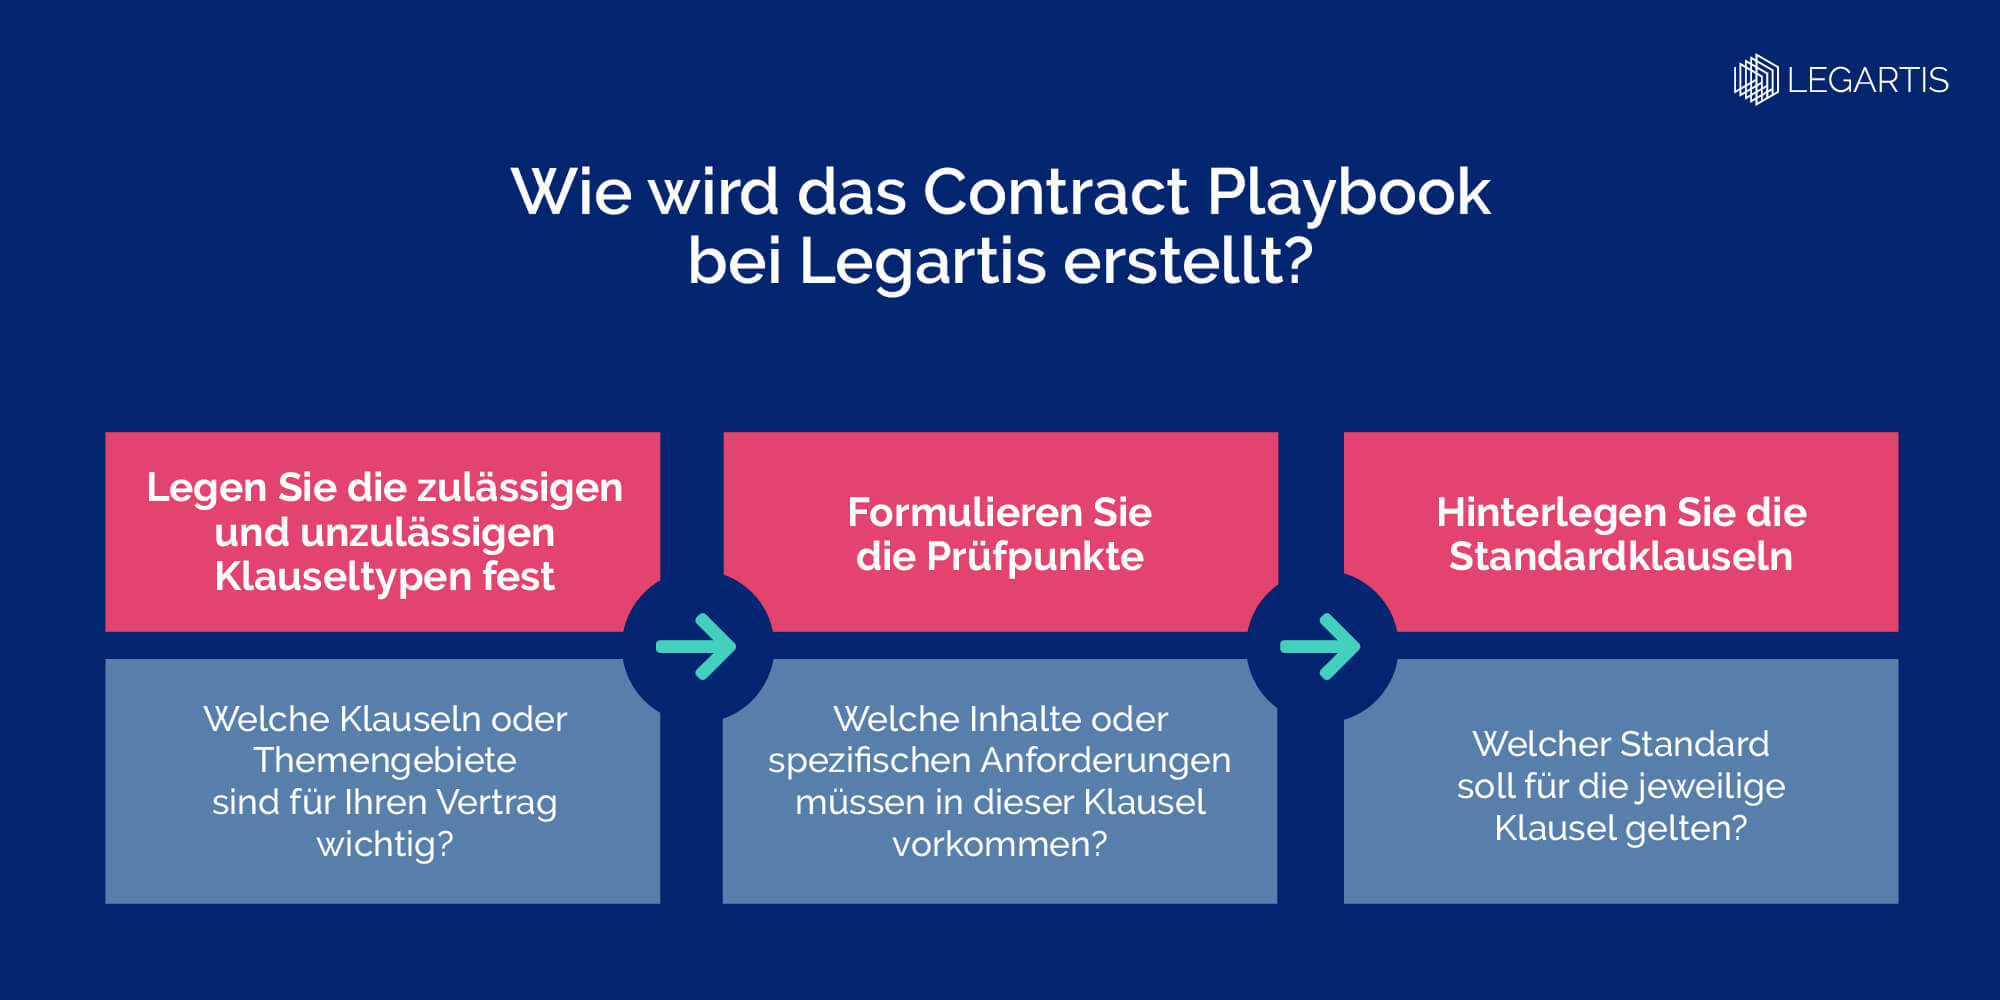 20221011-Legartis-Blog-Infographic-DE-Warum braucht man ein Contract Playbook